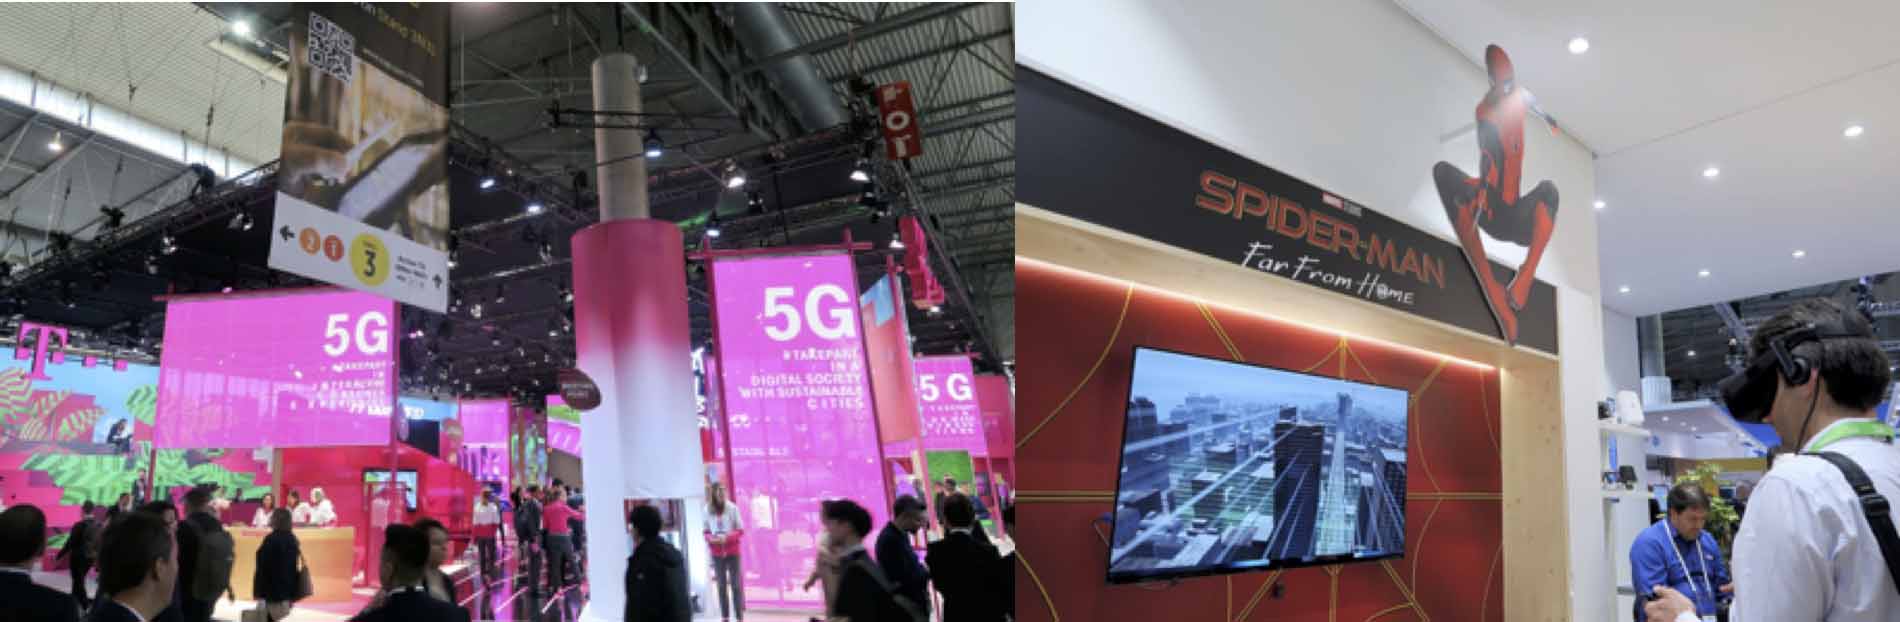 （左）「5G」の文字が目立つドイツテレコム、（右）ノキアのブースではインテルのブースと結んだマルチプレイヤーゲームを実演